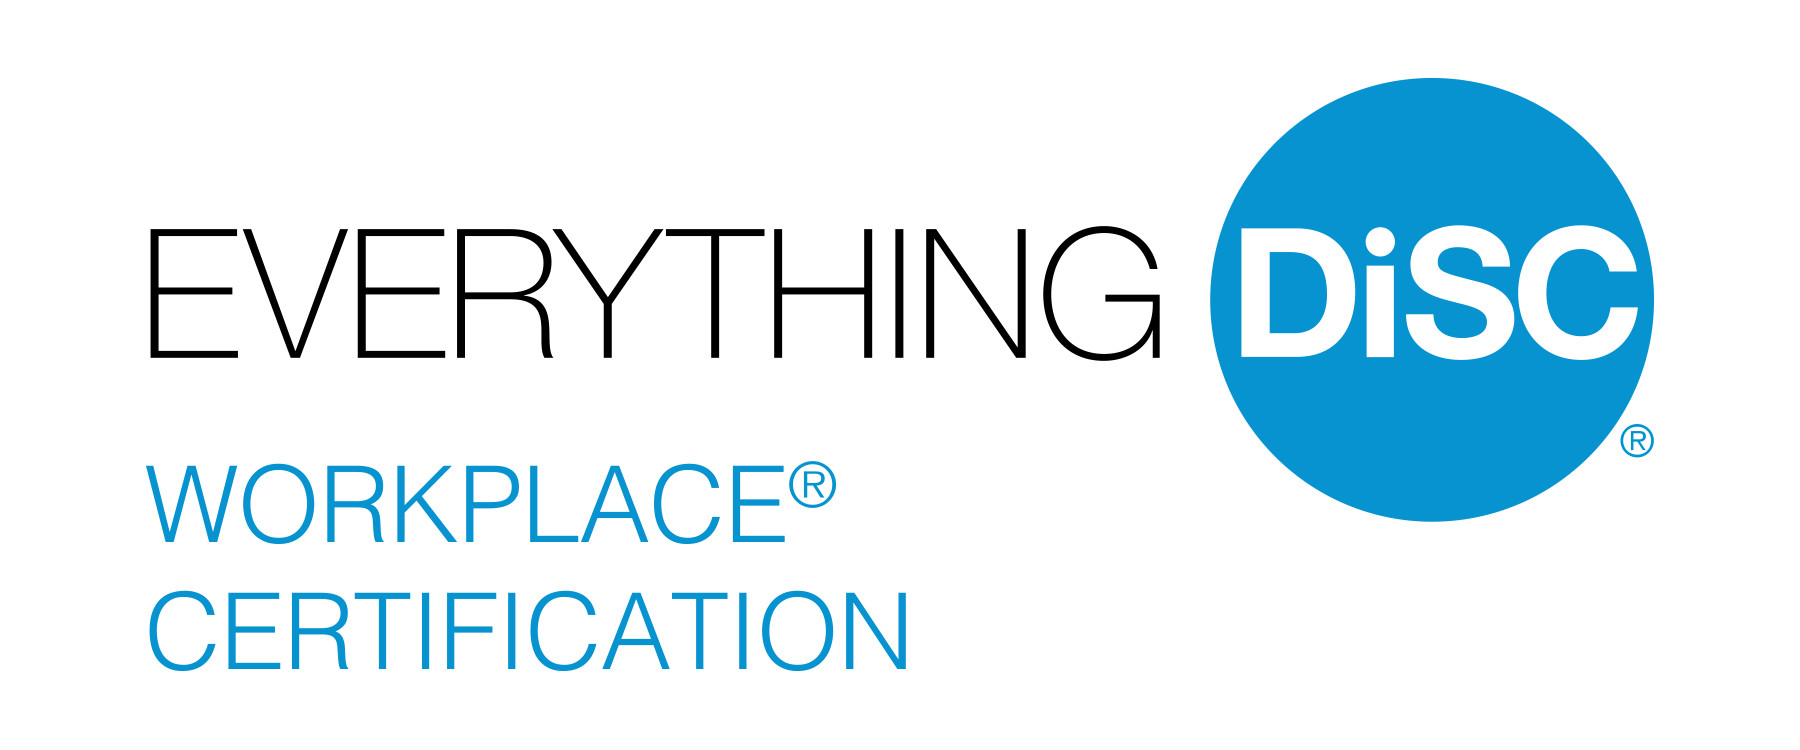 ed-workplace-certification-logo.jpg